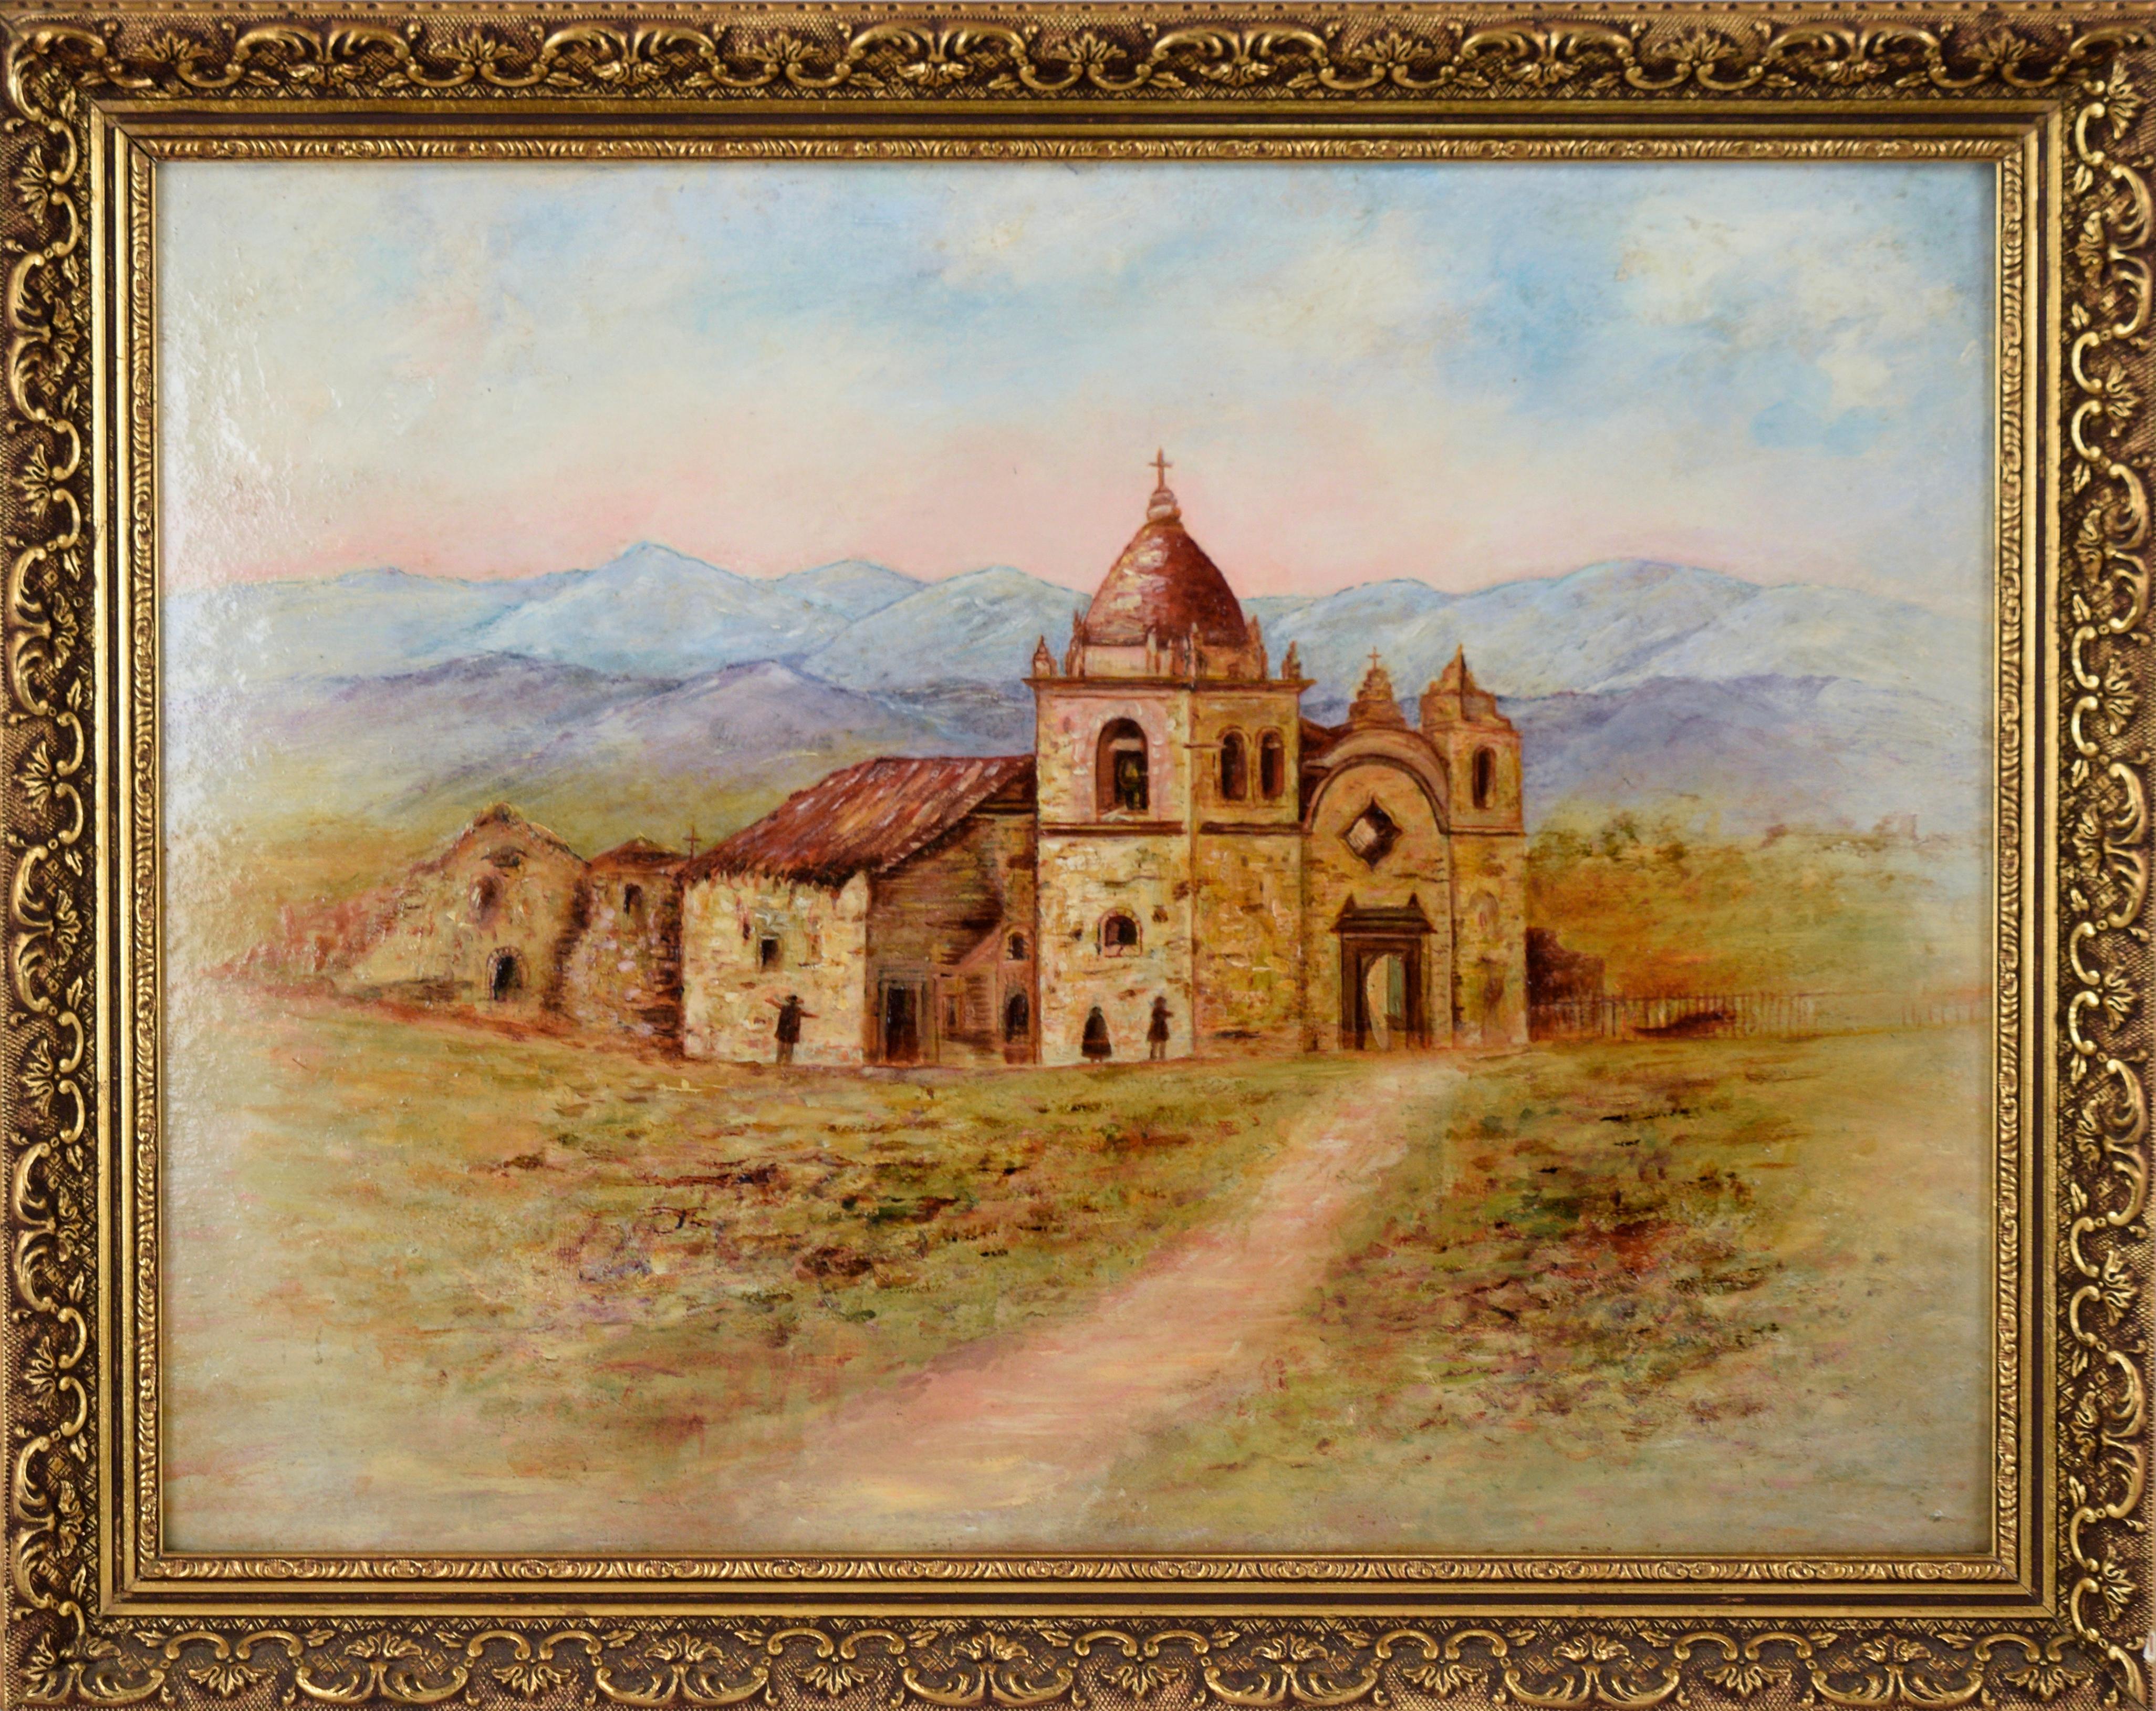 Carmel Mission, 1870 - Kalifornien Schule, Landschaft, Ölgemälde